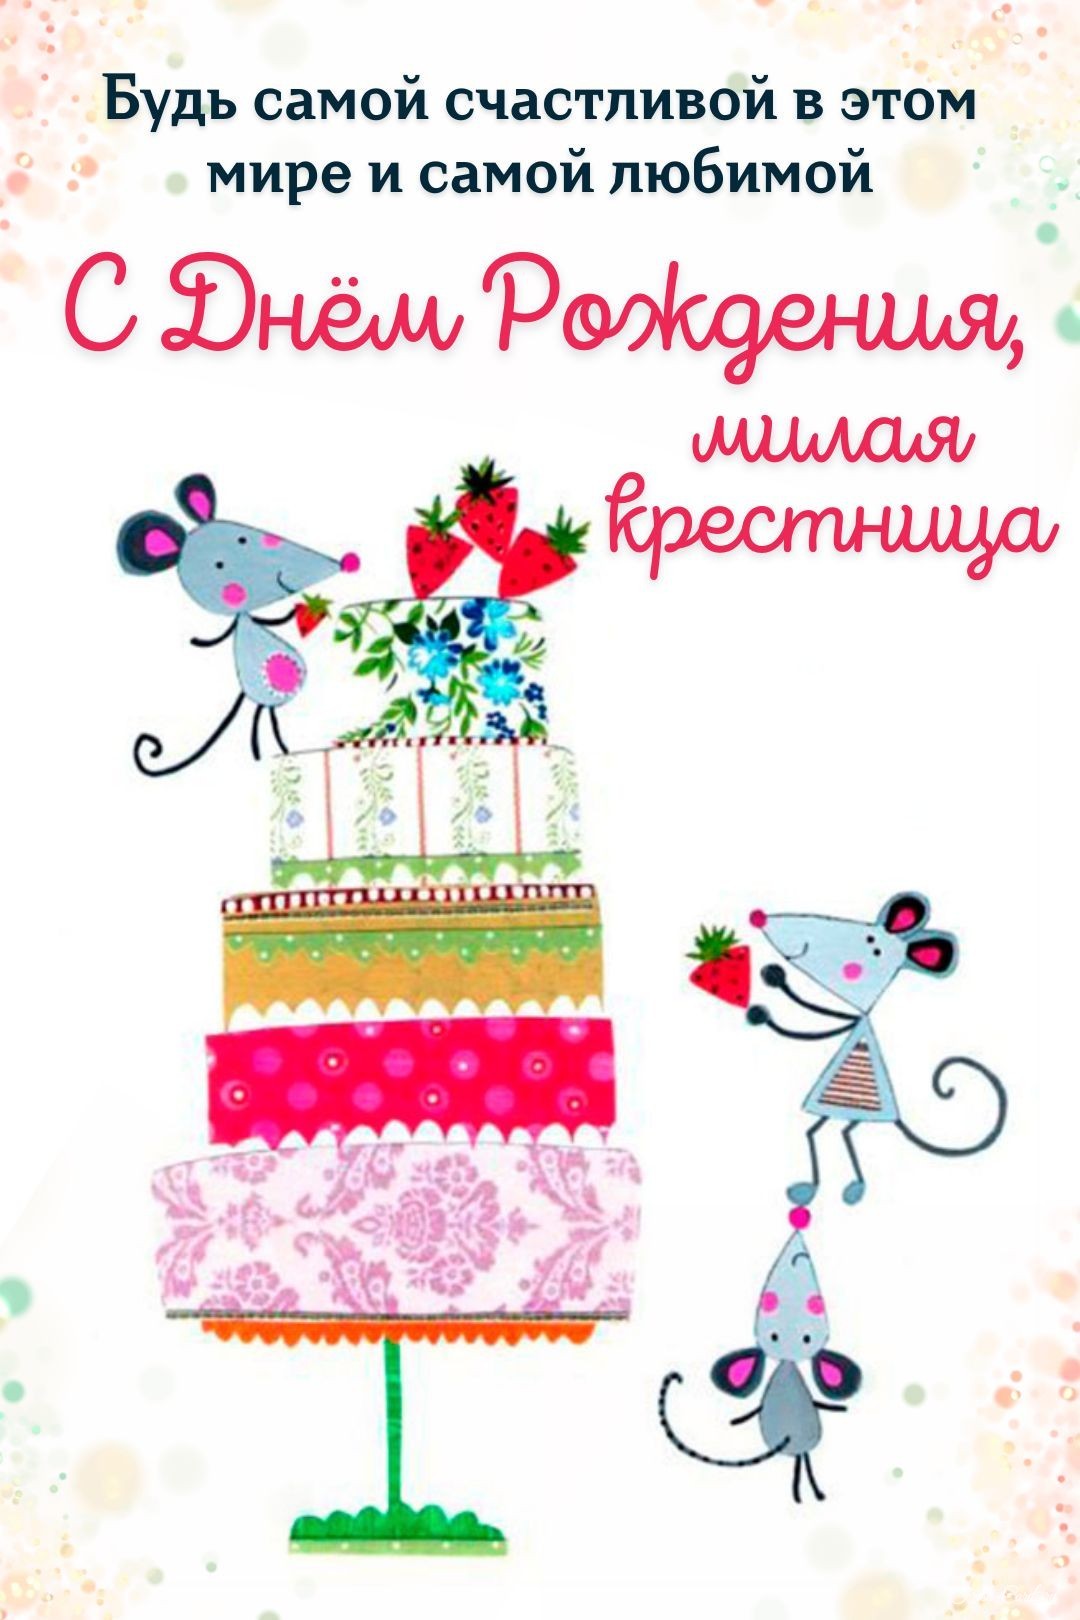 Авторская открытка с днем рождения крестнице